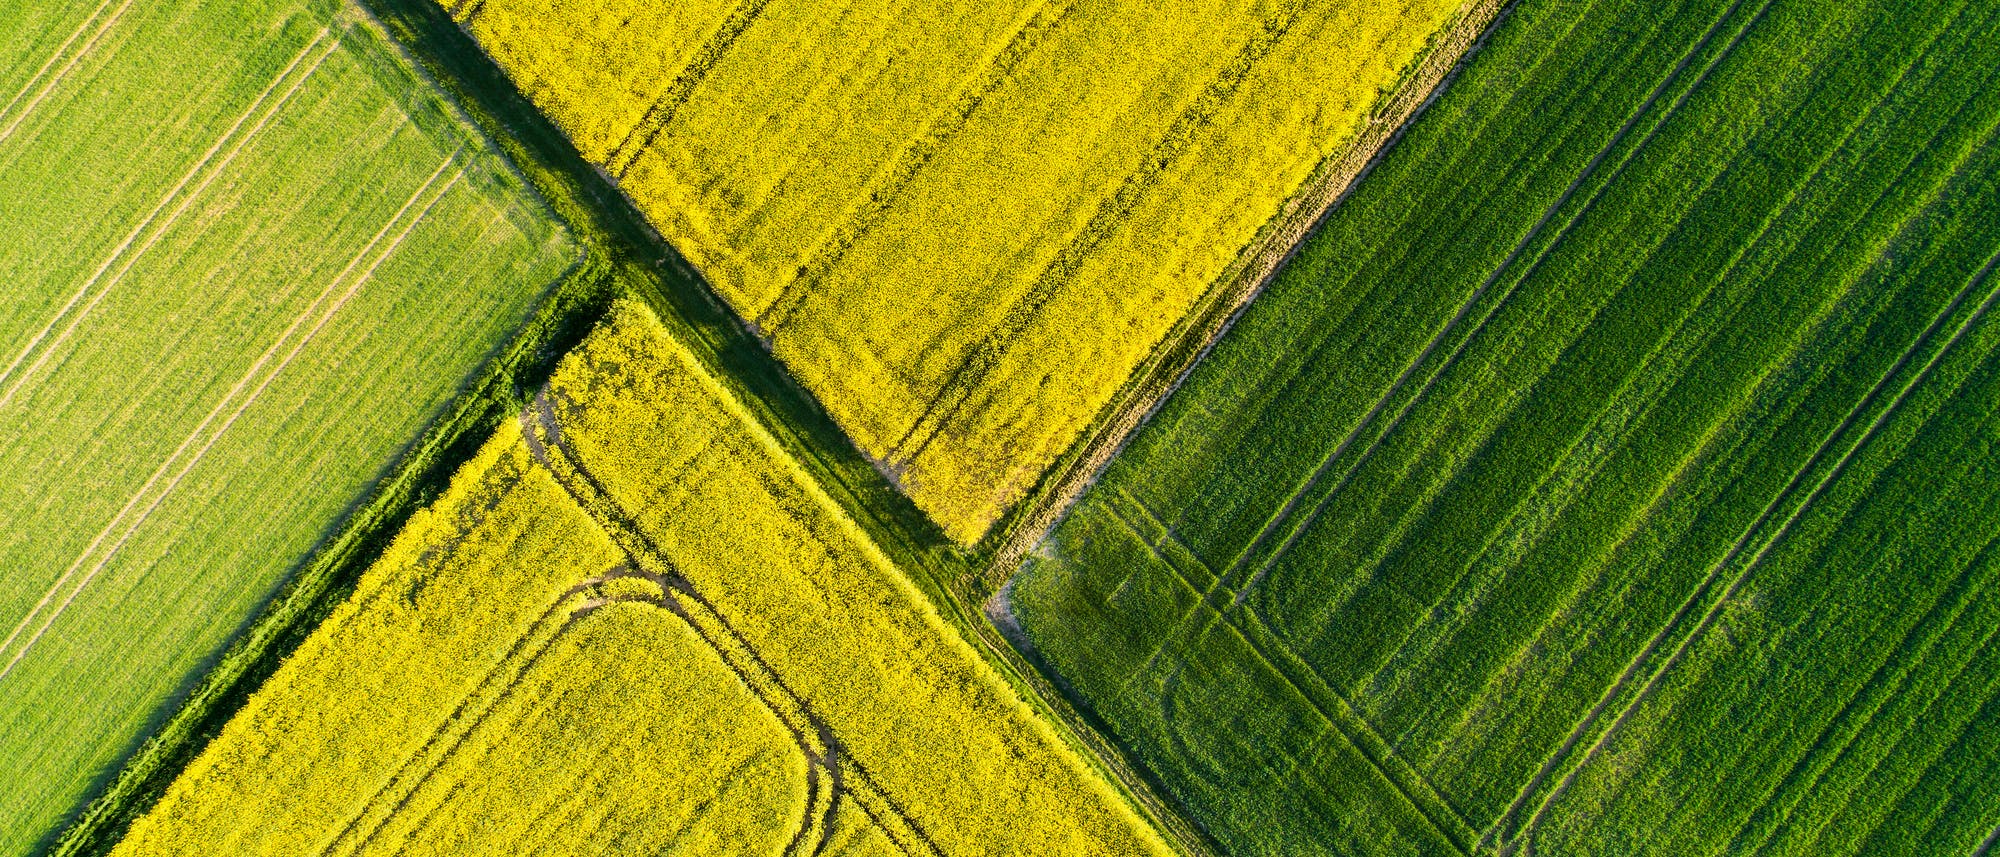 Vier Felder in Gelb- und Grüntönen grenzen in dieser Luftaufnahme aneinander.